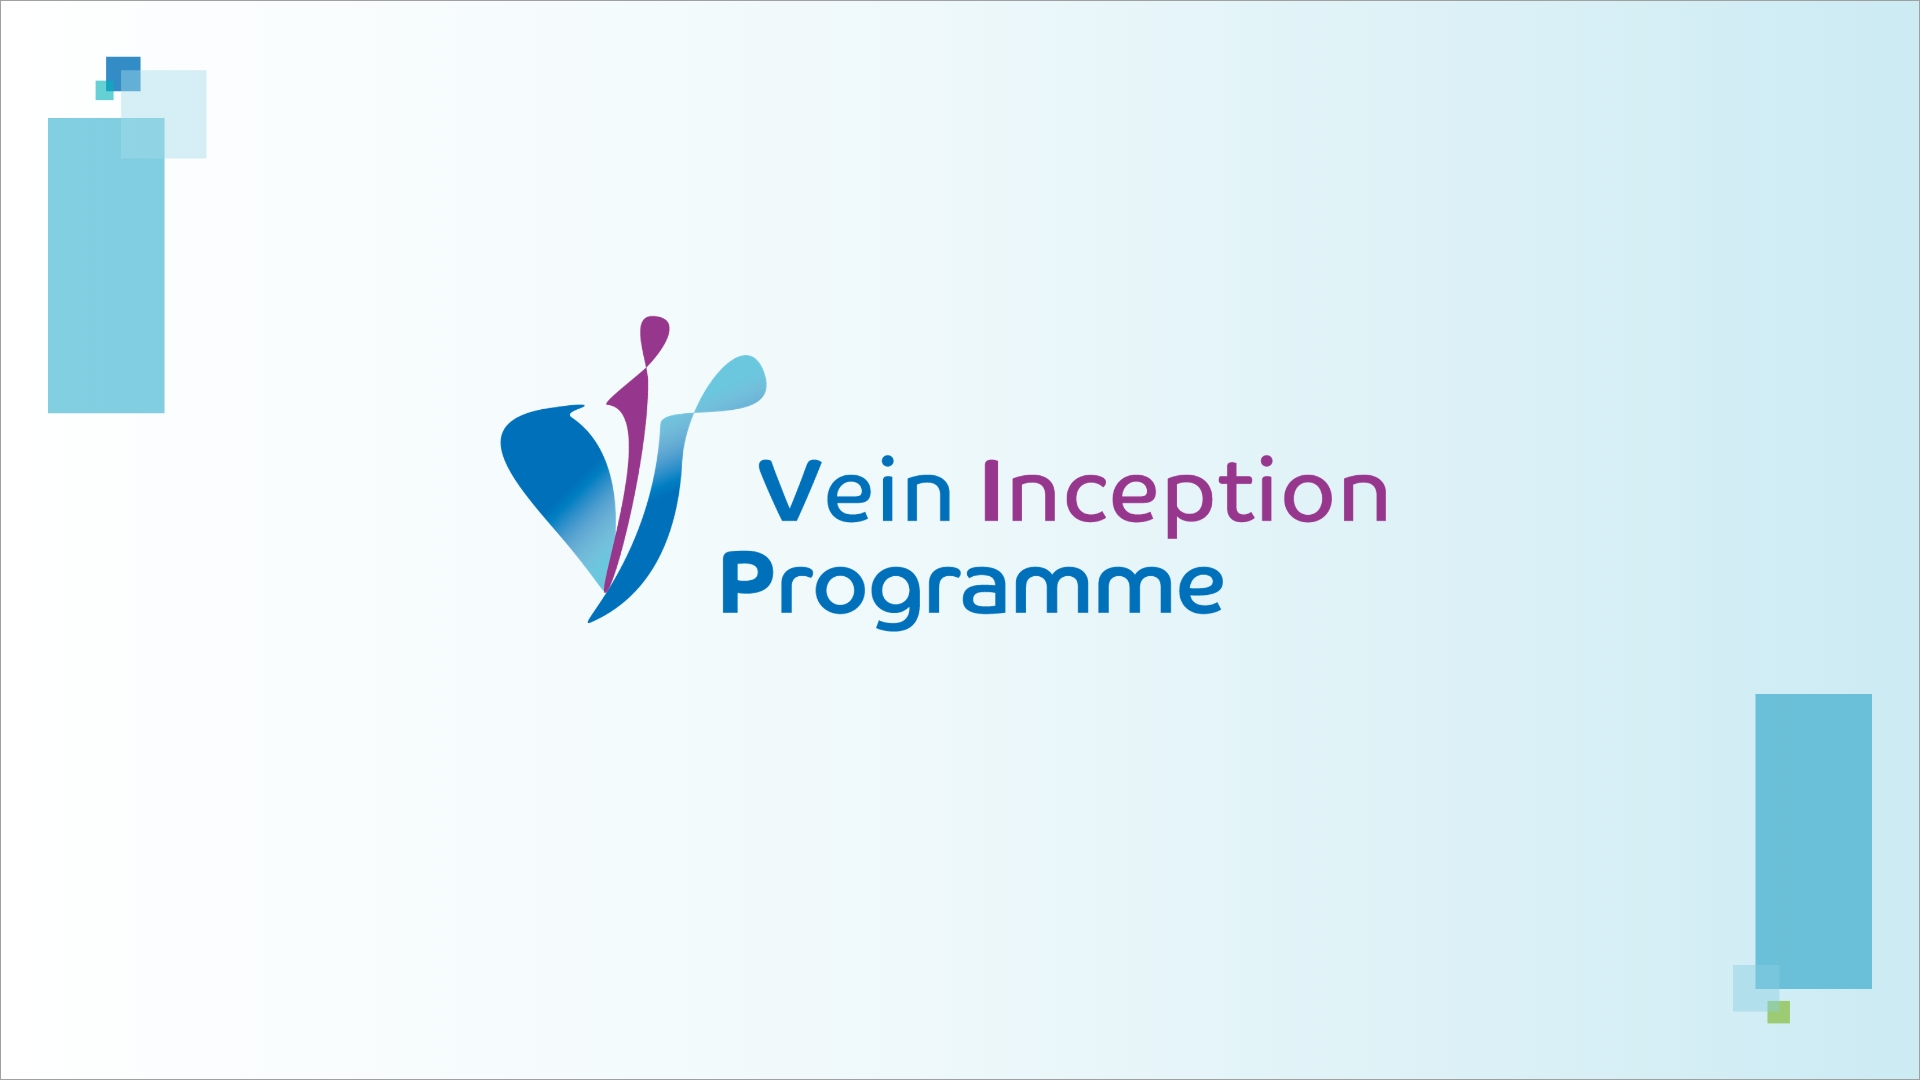 Vein Inception Program